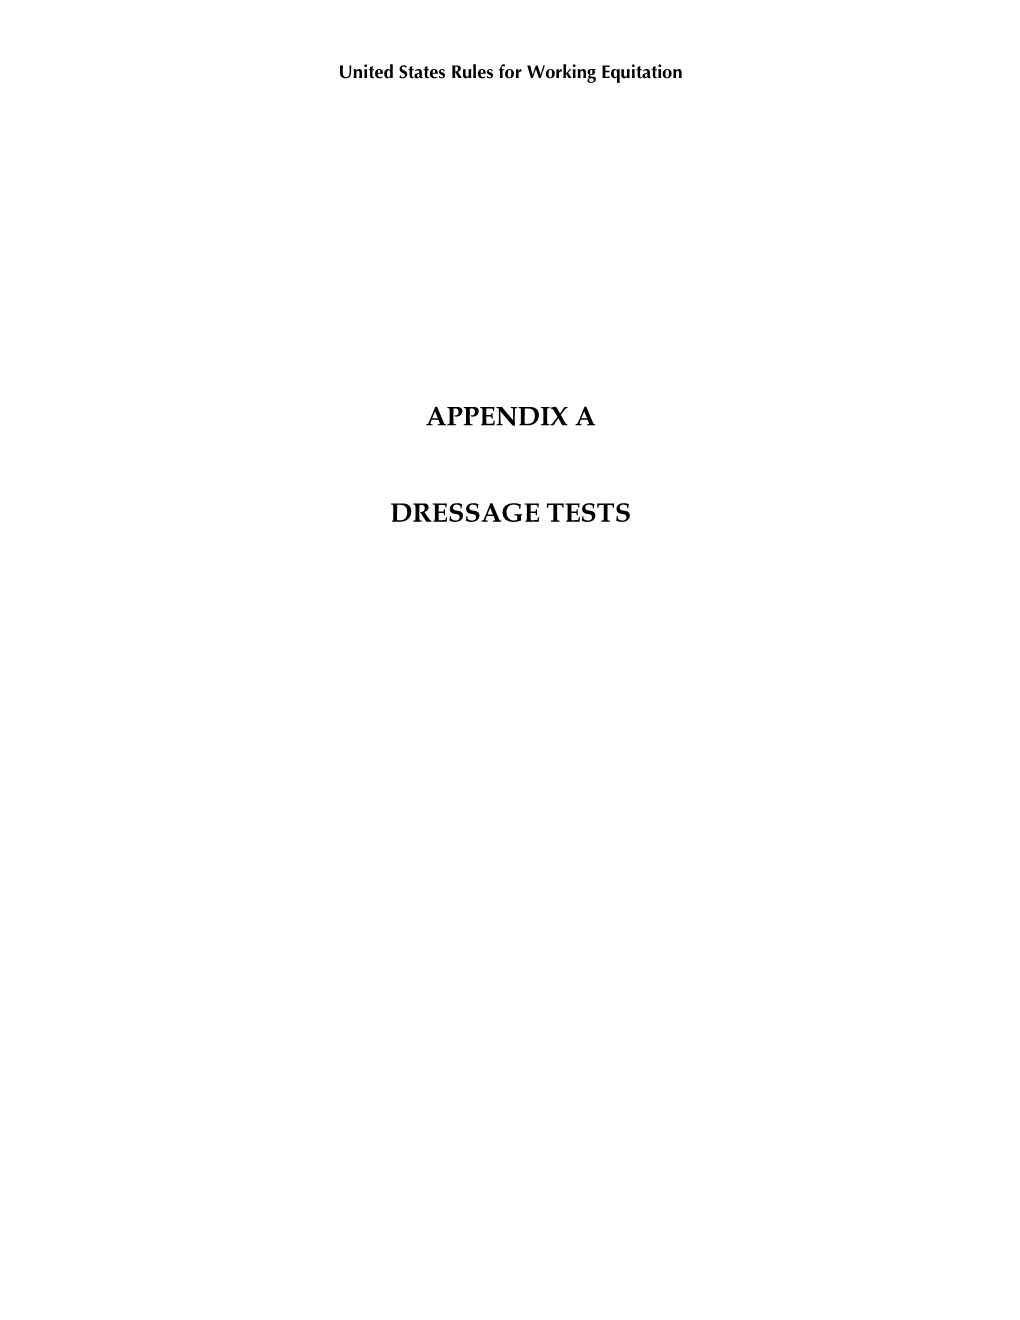 Appendix a Dressage Tests